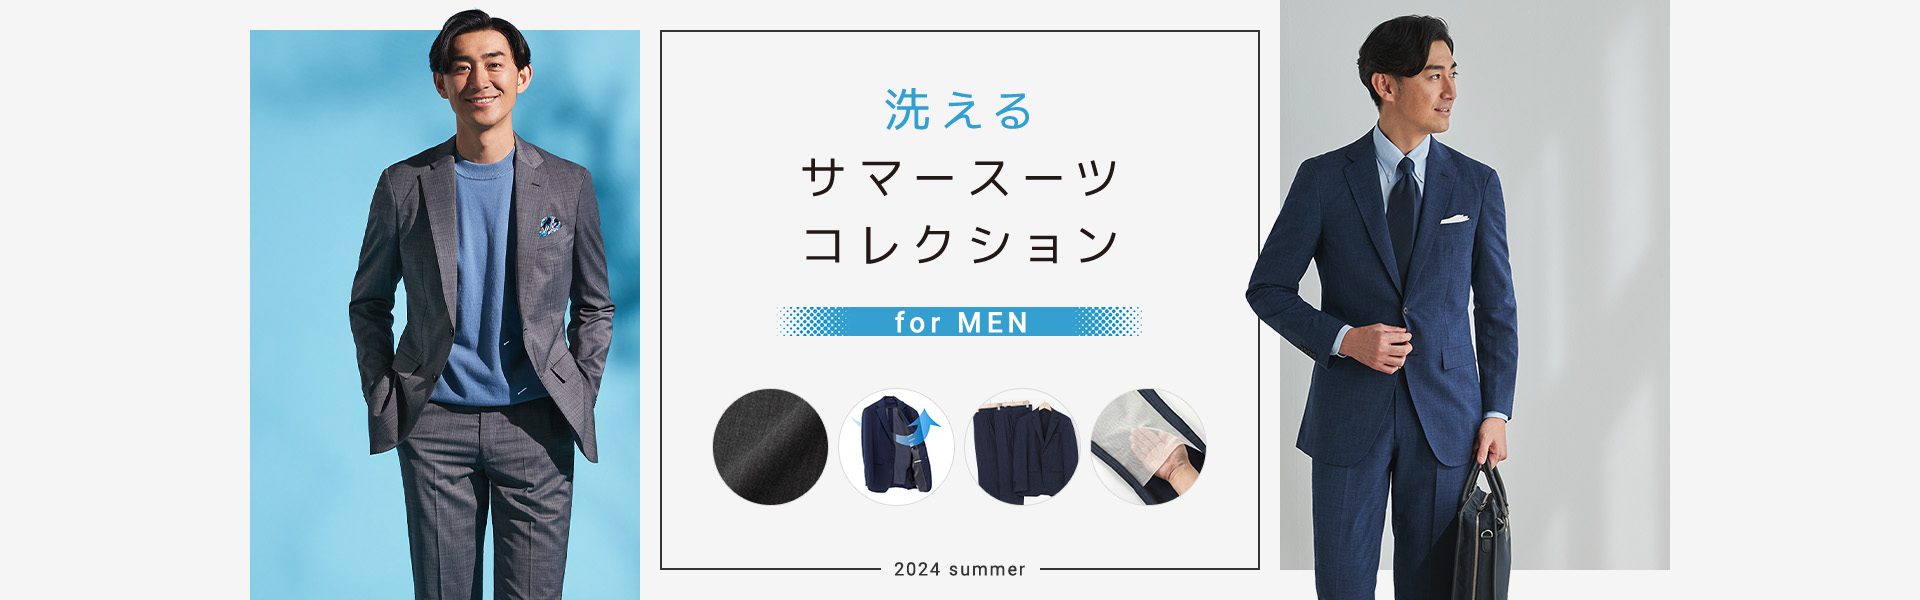 洗えるサマースーツコレクション for MEN